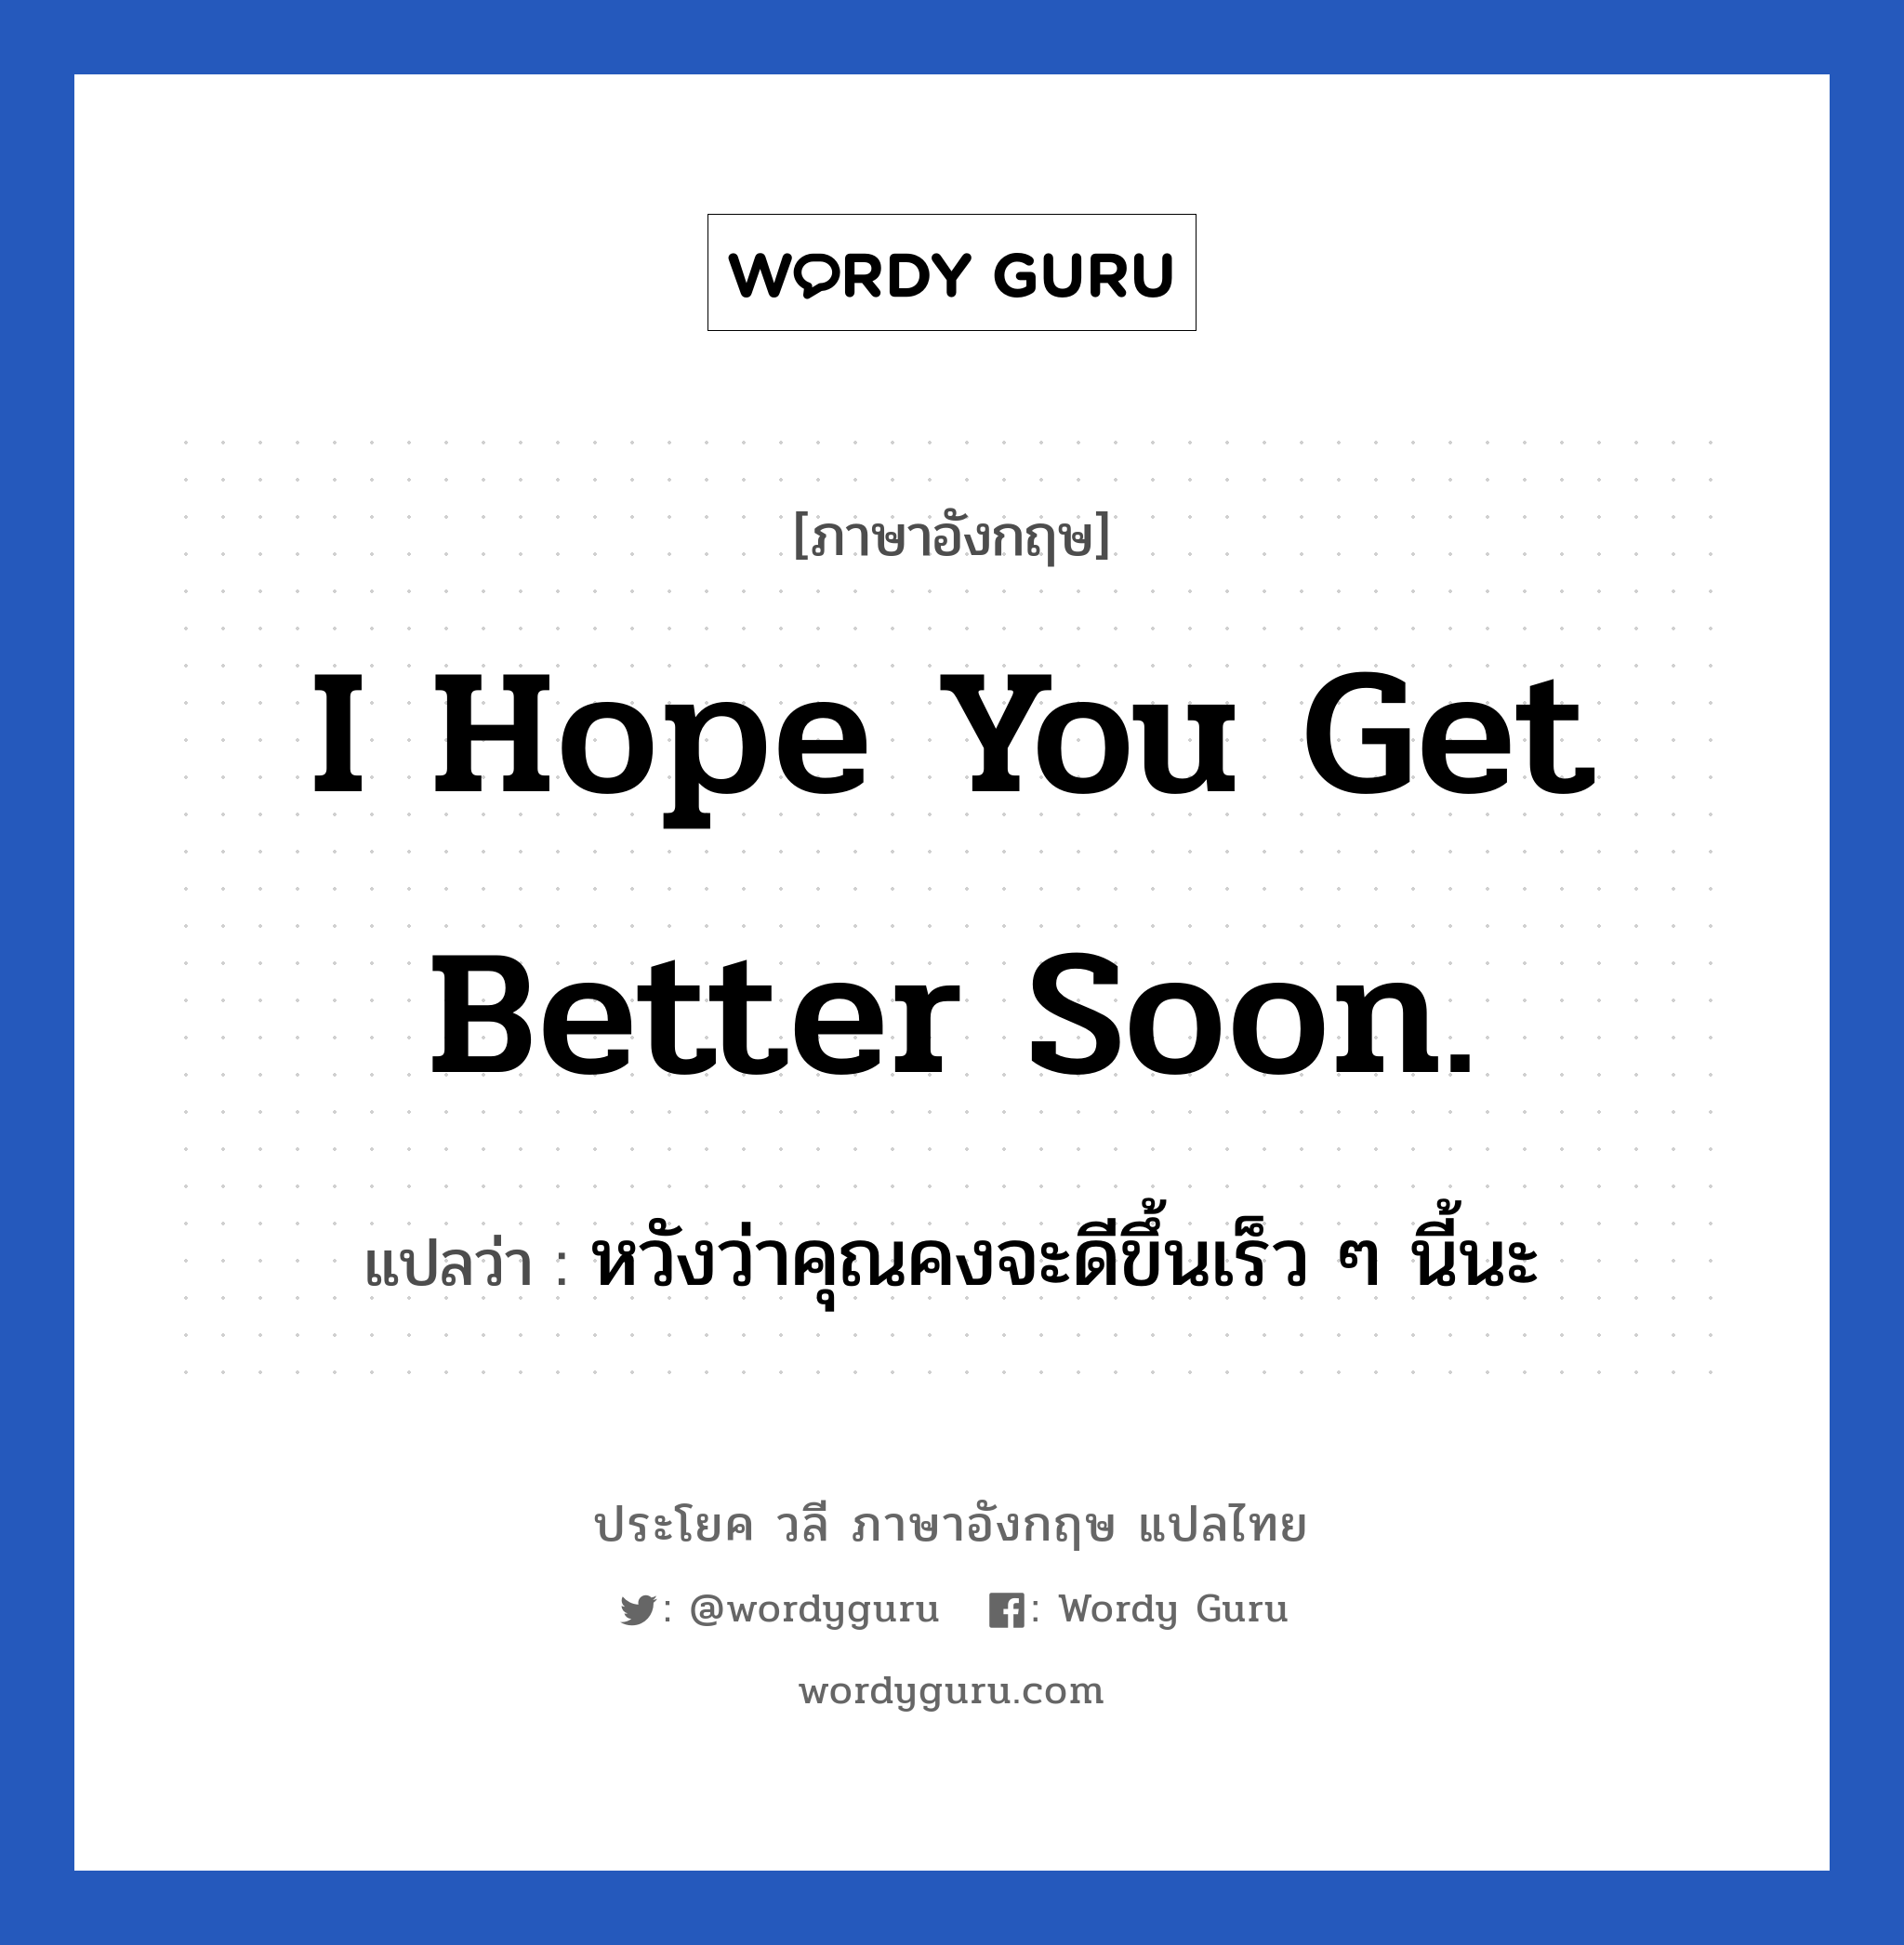 I hope you get better soon. แปลว่า?, วลีภาษาอังกฤษ I hope you get better soon. แปลว่า หวังว่าคุณคงจะดีขึ้นเร็ว ๆ นี้นะ หมวด ให้กำลังใจ